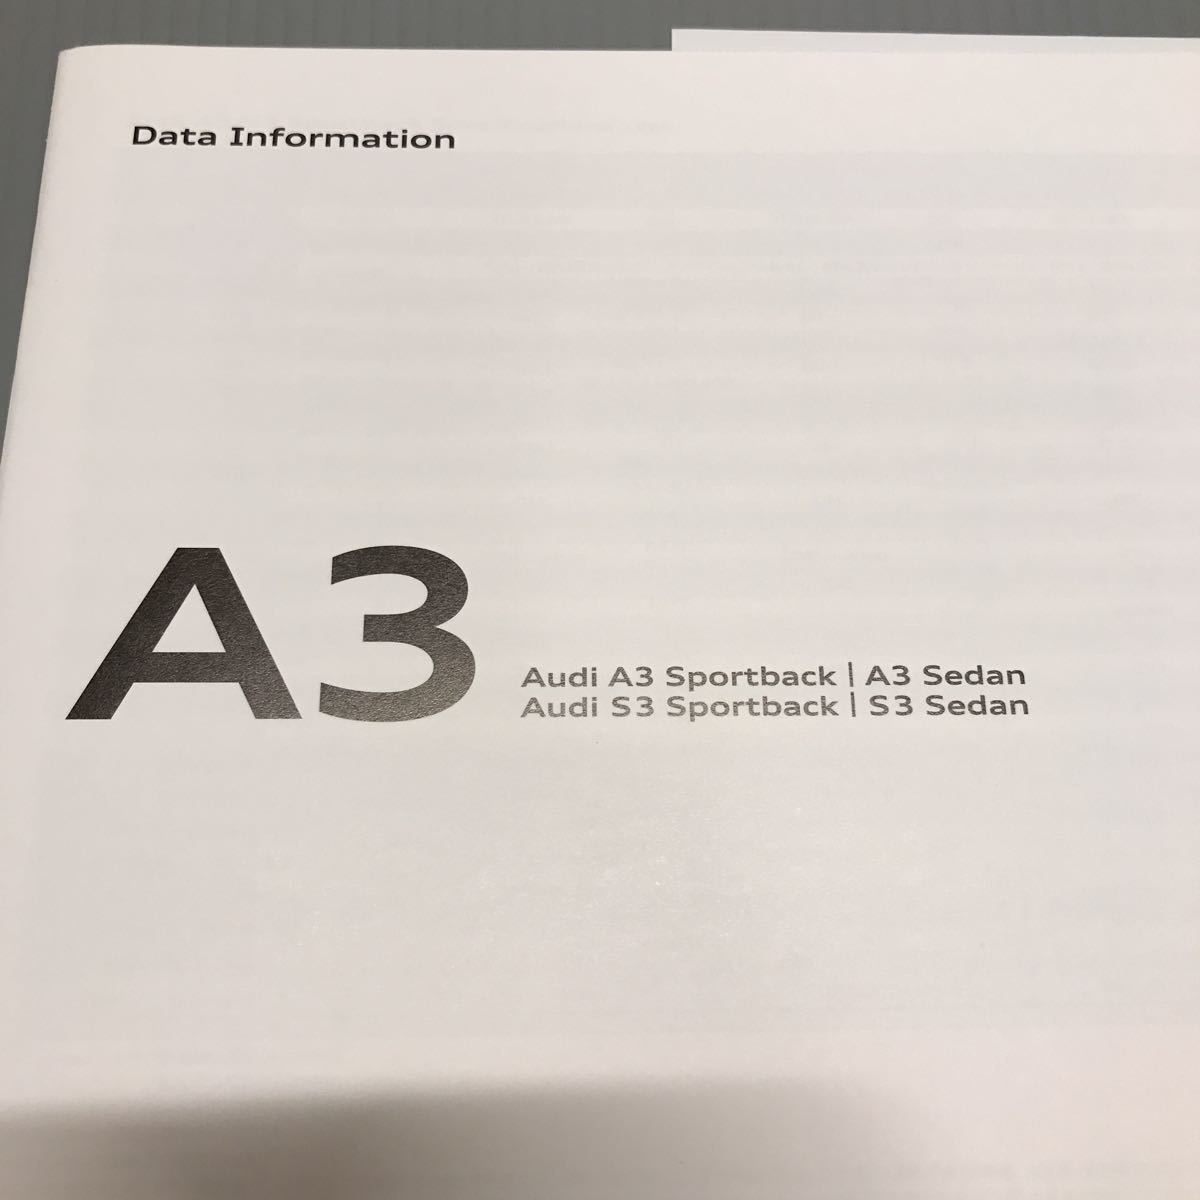  не прочитан! Audi A3 | S3 Sportback | седан каталог 59 страница Data Information приложен 2017 год 9 месяц содержание версия 